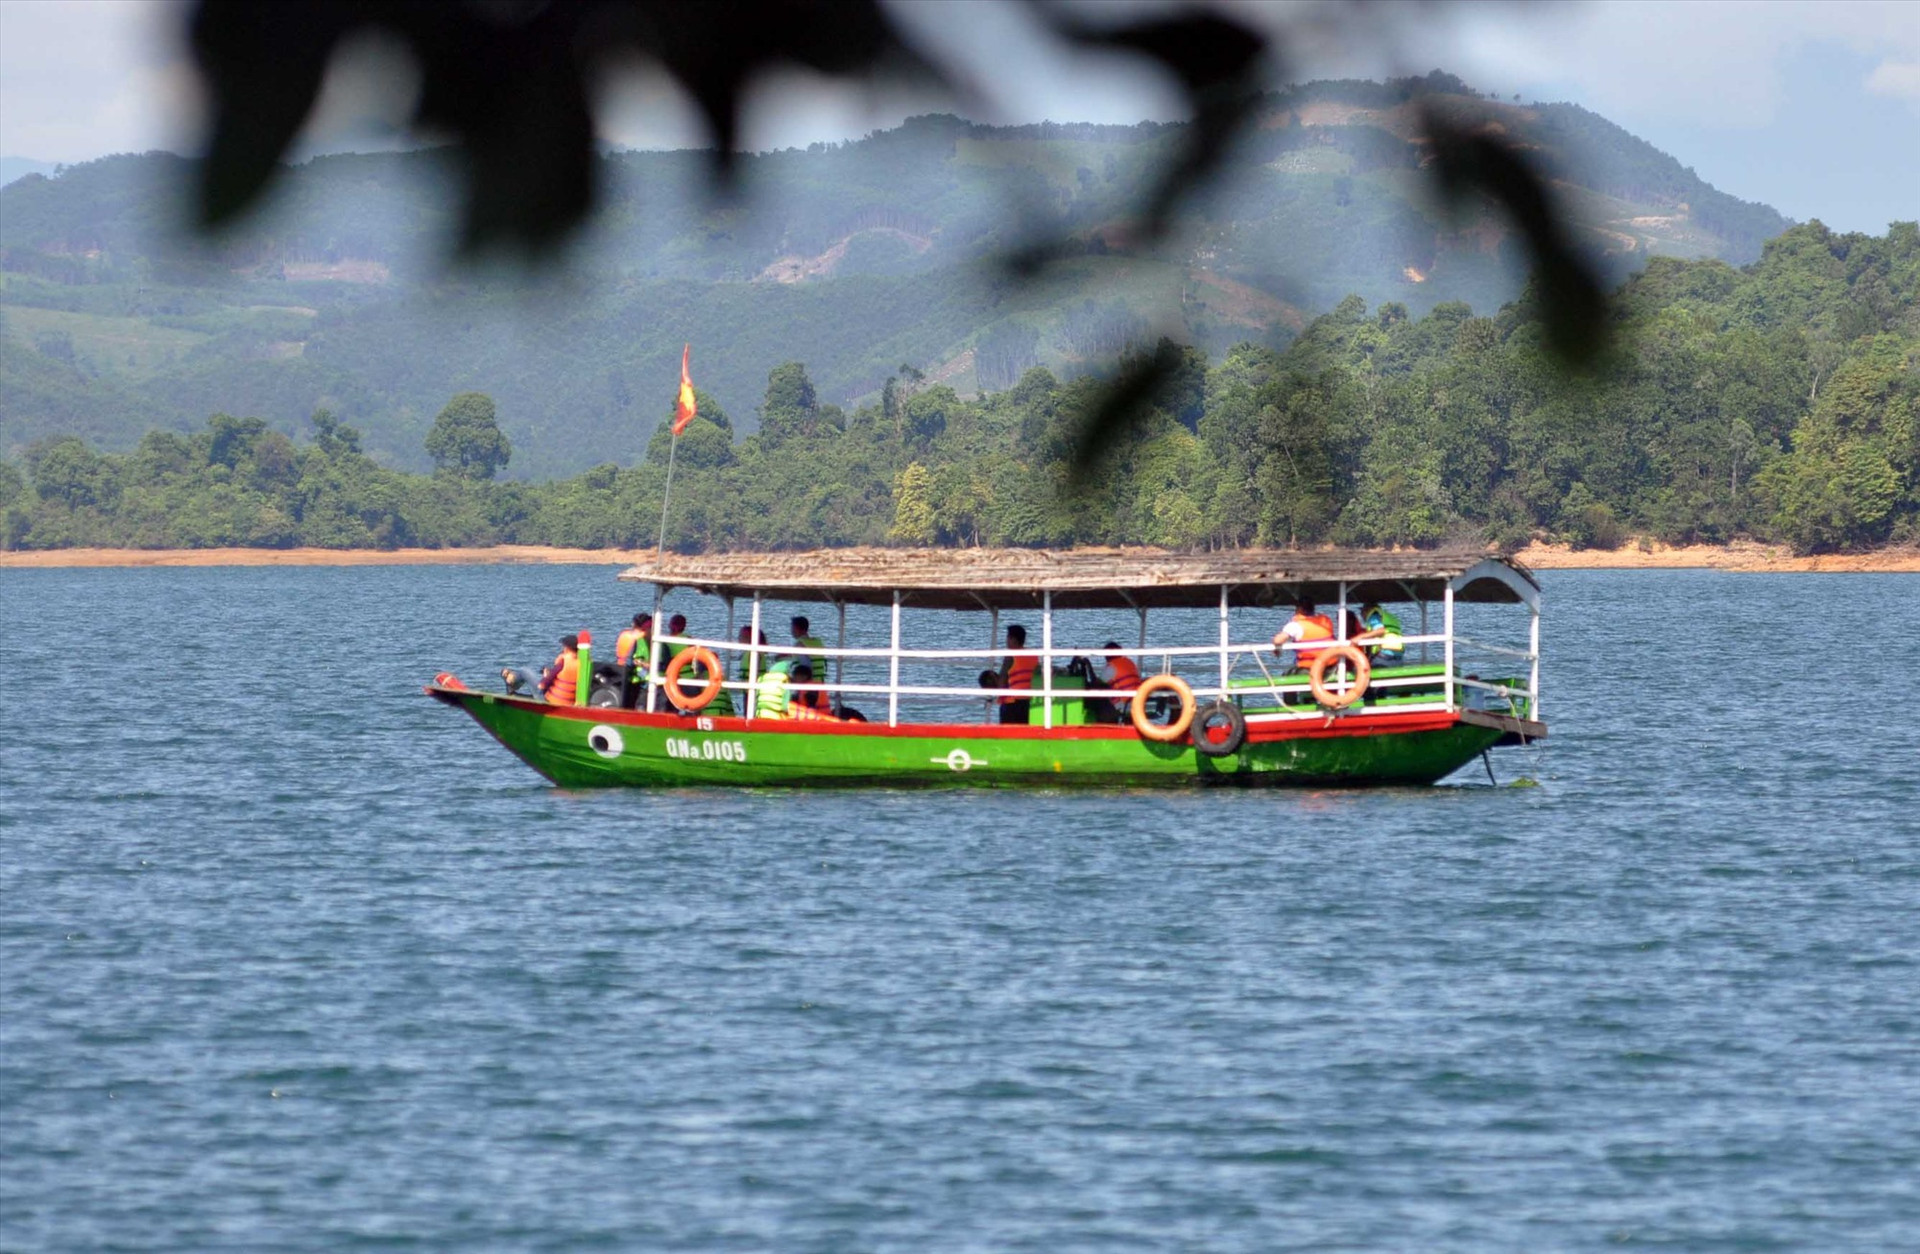 Du lịch Tam Kỳ cần gắn kết với các địa phương lân cận, trong đó có Phú Ninh để kết nối các điểm du lịch của thành phố với hồ Phú Ninh. Ảnh: X.P